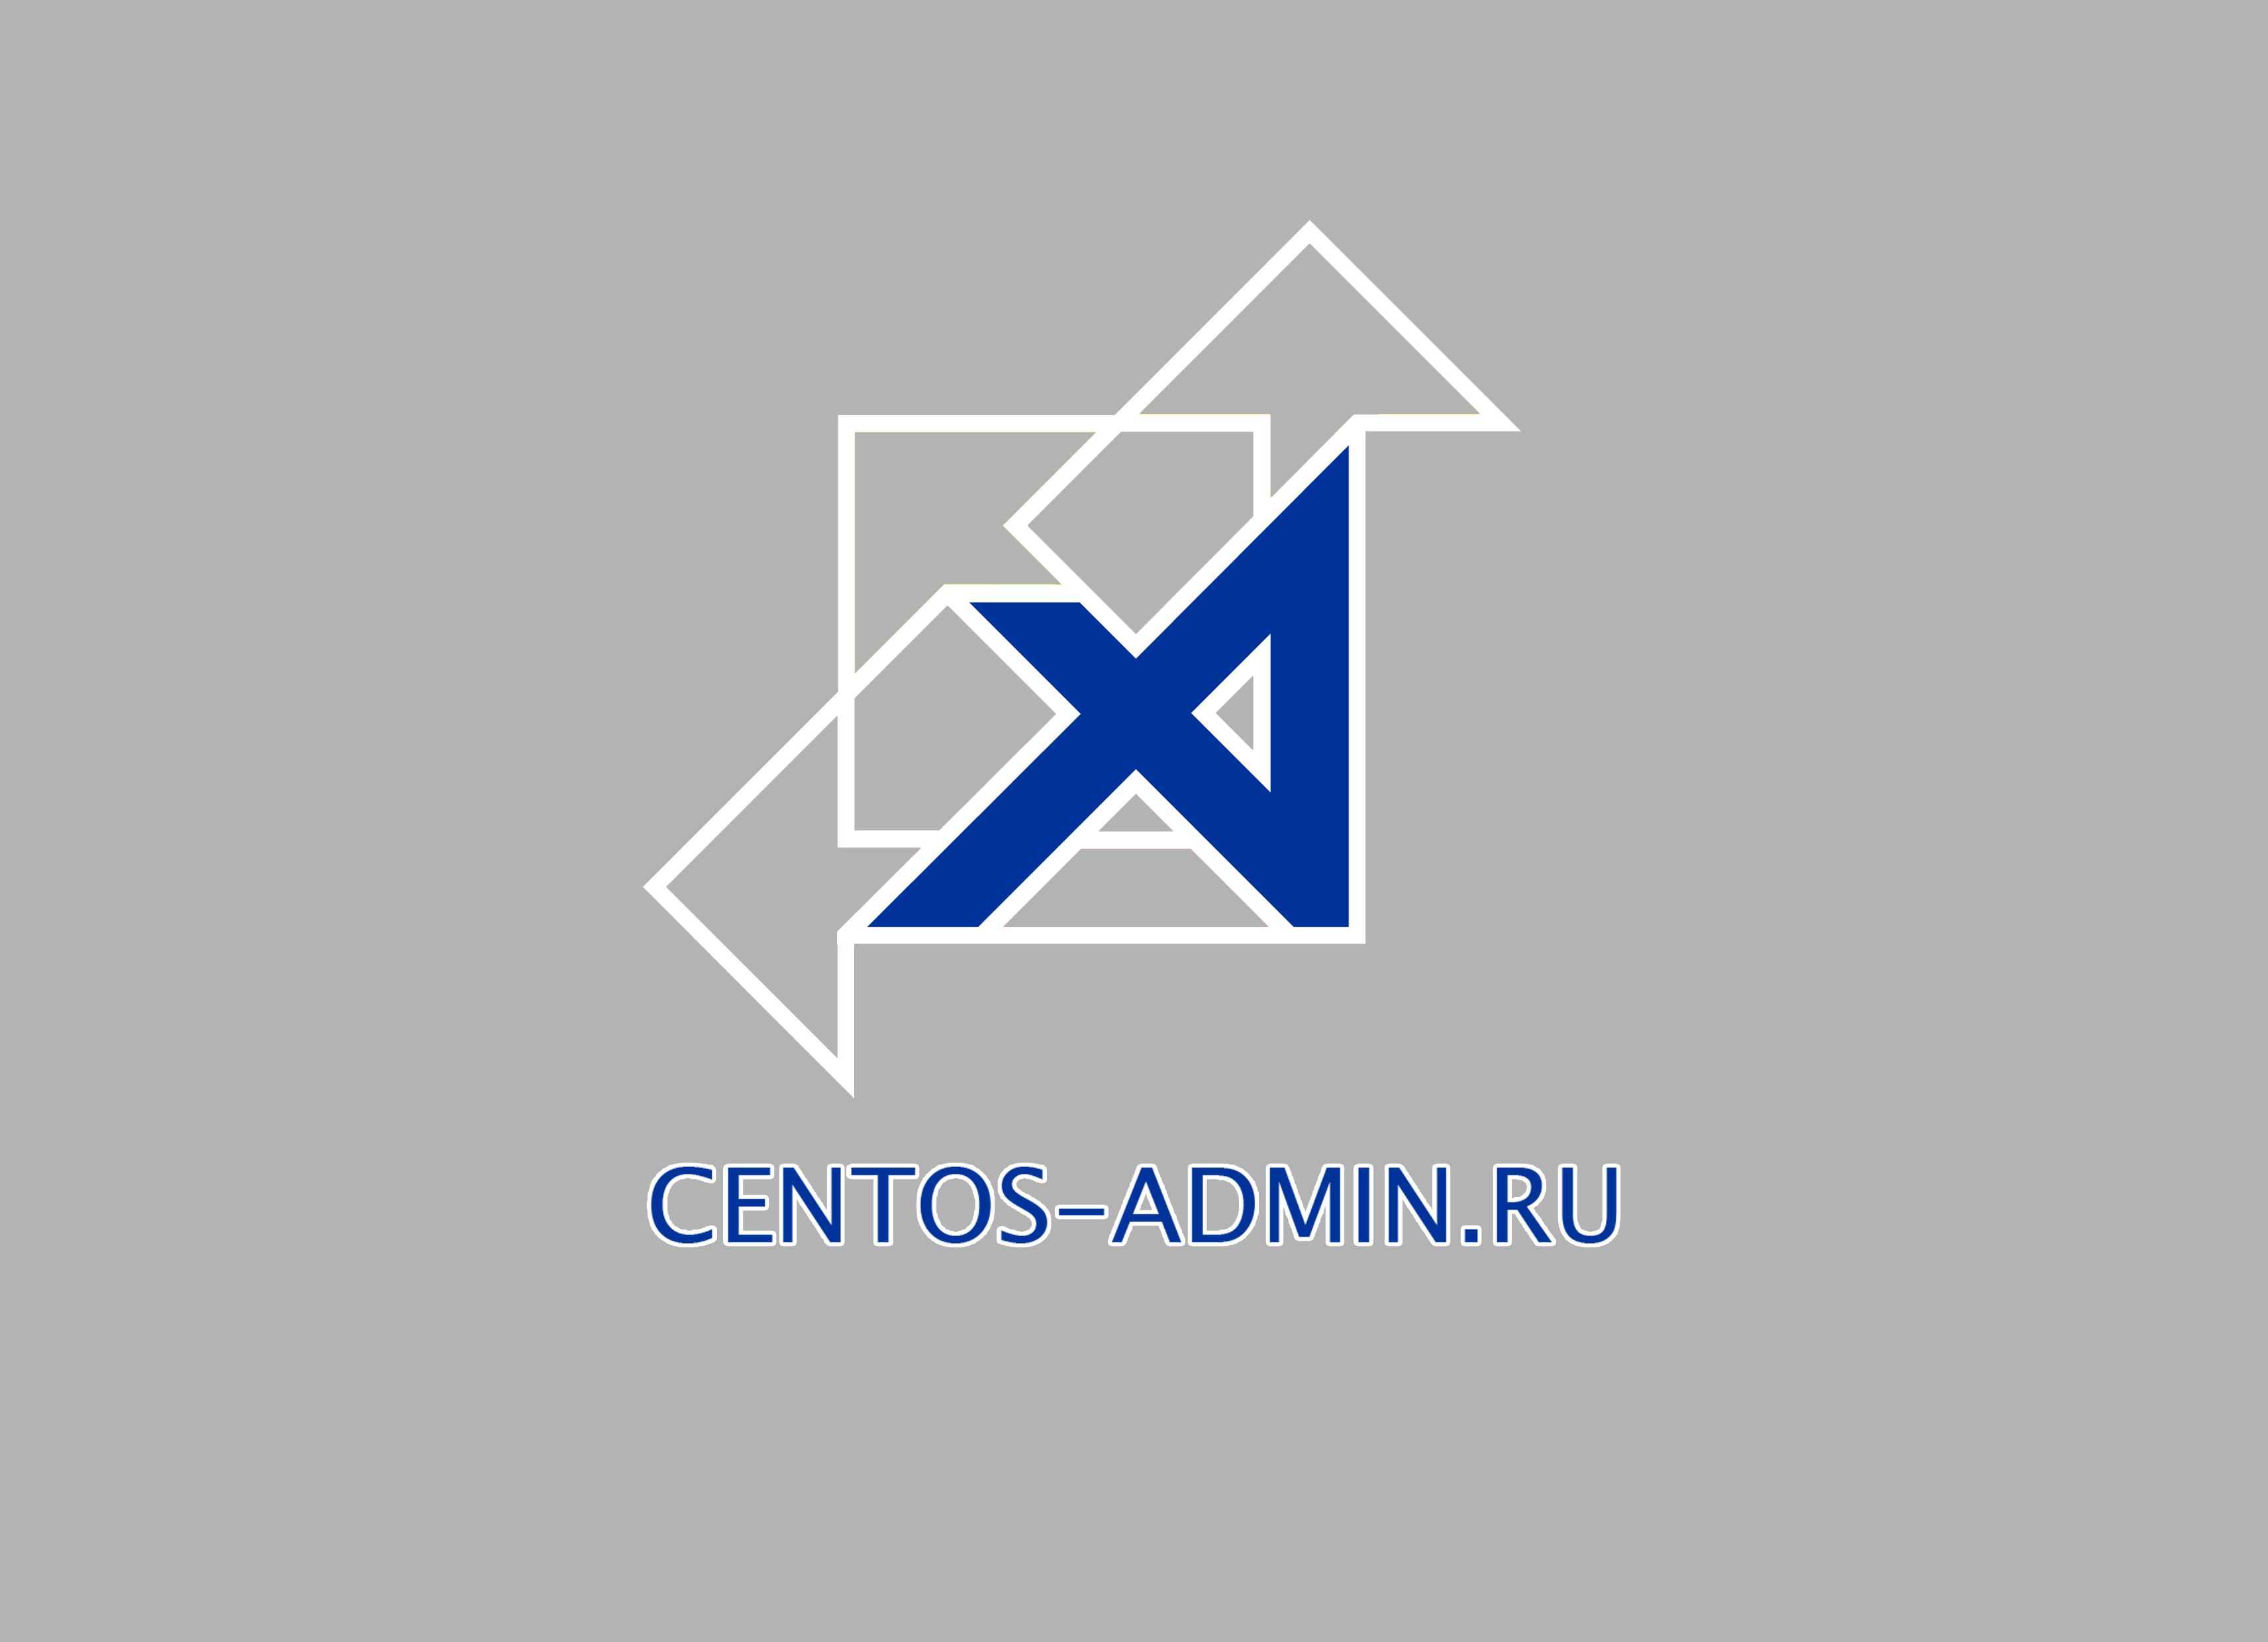 Логотип для компании Centos-admin.ru - дизайнер Ant0ni0n